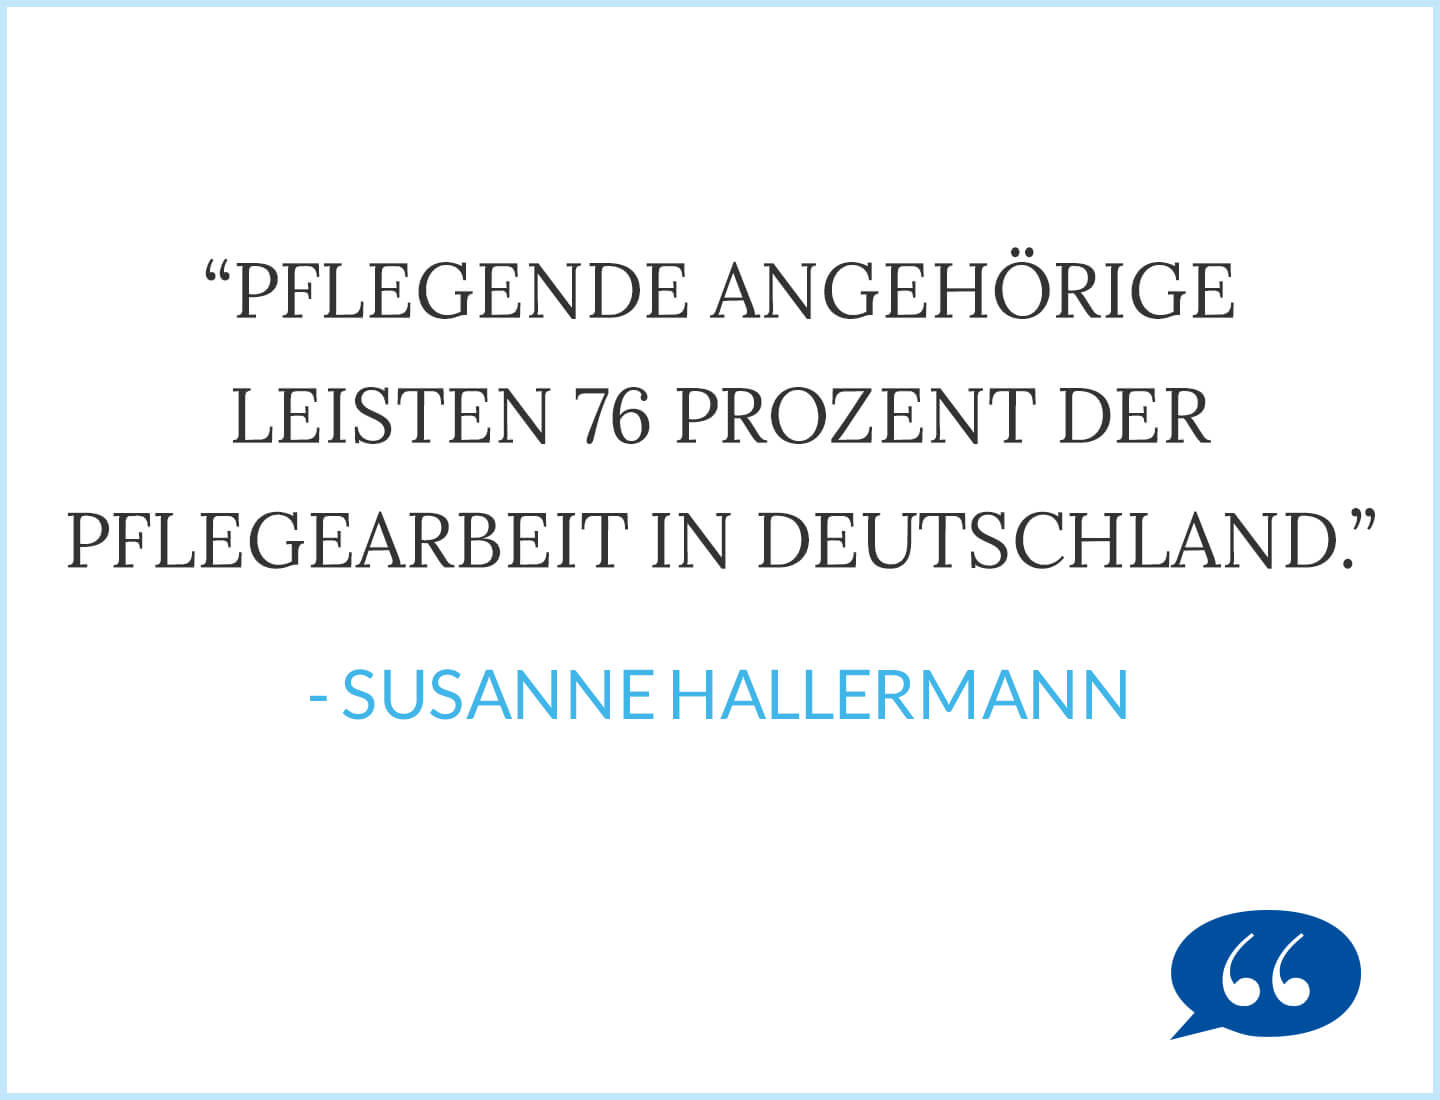 Pflegende Angehörige leisten 76 Prozent der Pflegearbeit in Deutschland. - Susanne Hallermann